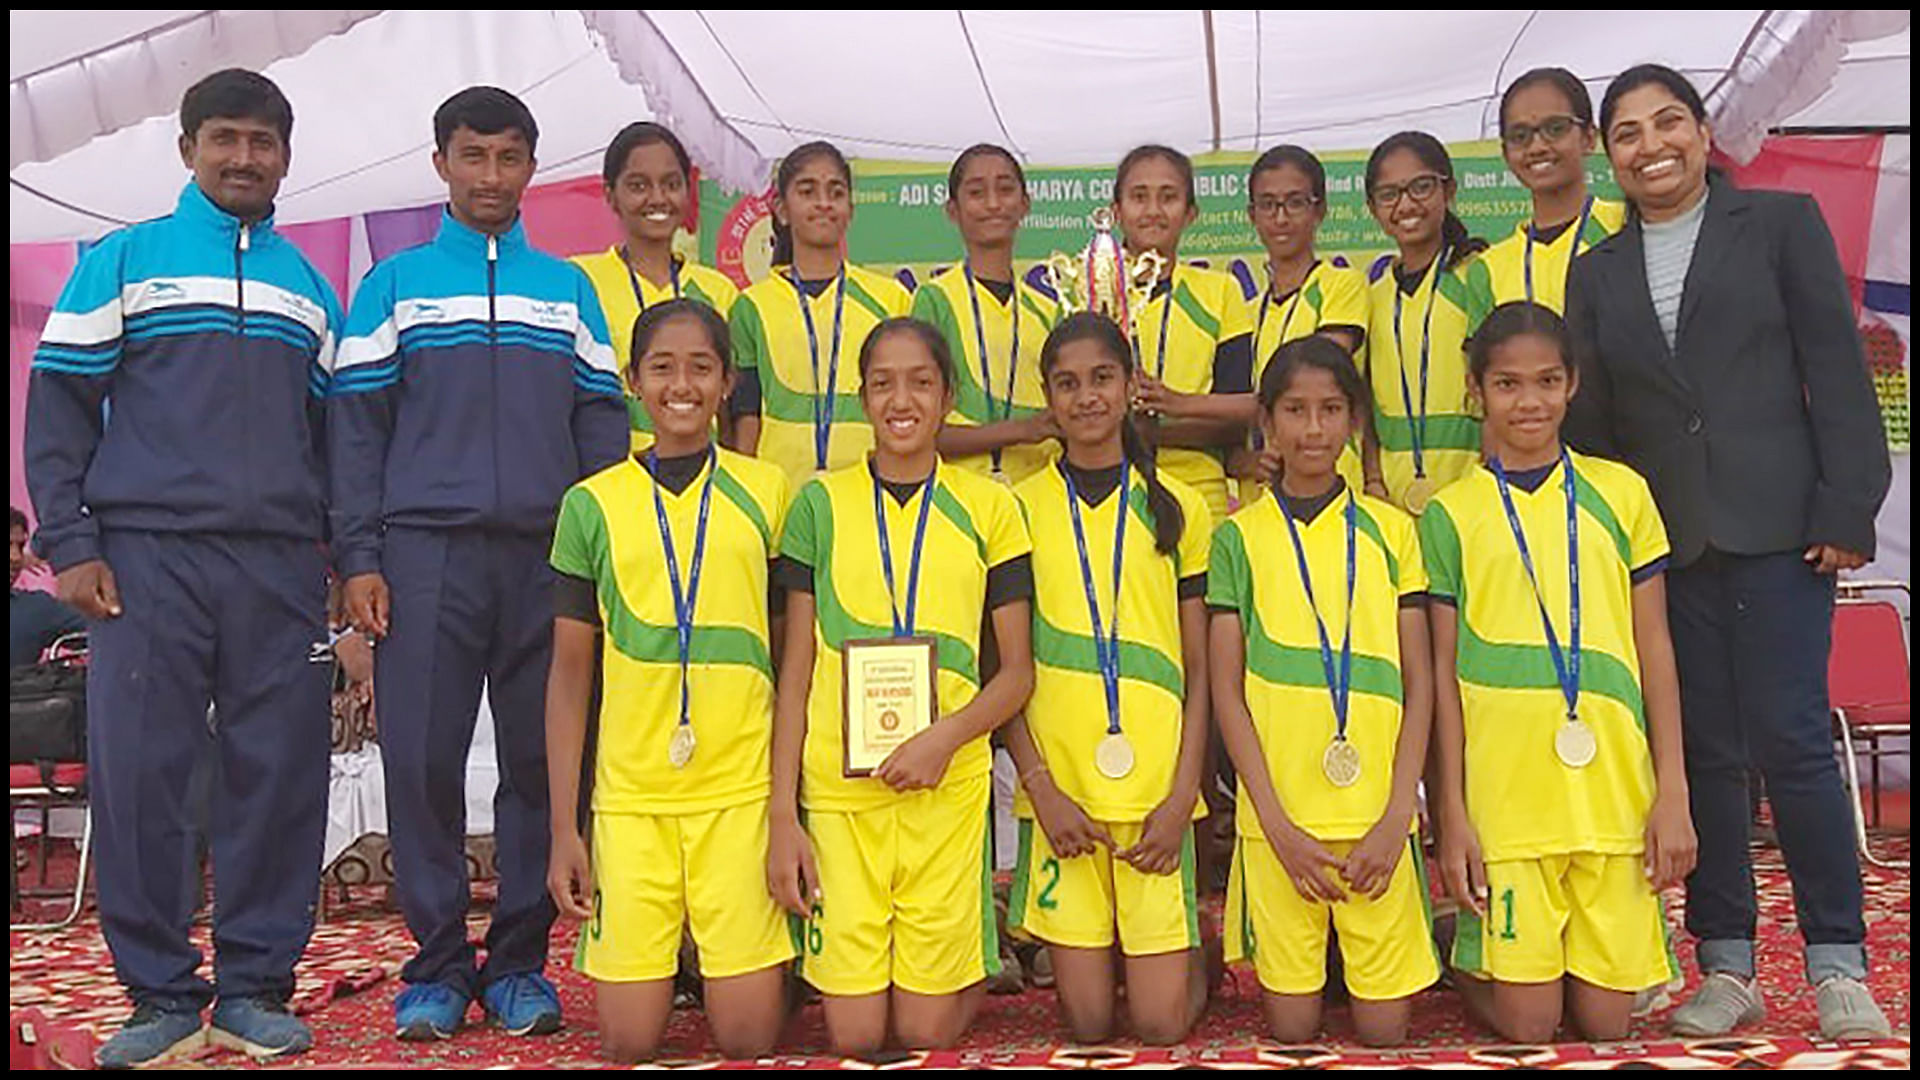 Bottom row: Amoolya M, Kripa VS, Laasya Suresh, Akshara Manohar, Vachana Basavaraj Hiremath. Top row: Chandana R, Komal B, Shreya G, Varsha G (capt.), Veditha K, Aditi Hulmani, Raksha P. Team Coach: Ranganatha VN, Thippeswamy RN. Team Manager: Anita Rai B